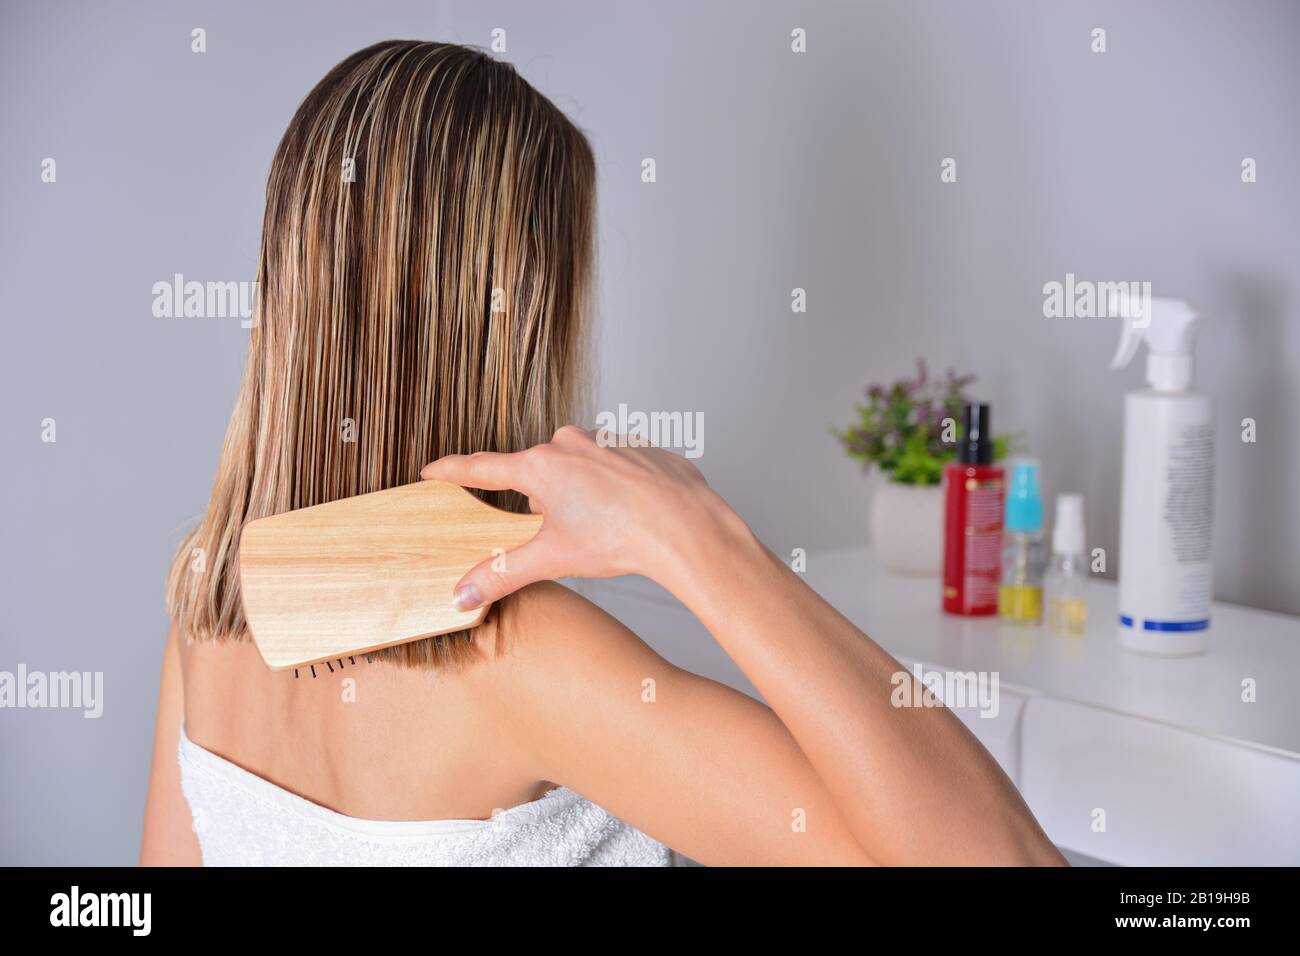 Frau mit Kammaufsatz, die ihr nasses blondes Haar nach dem Duschen zu Hause putzt. Sorgt für gesundes und sauberes Haar. Beauty-Salon-Konzept. Mädchen trägt weißes Handtuch Stockfoto